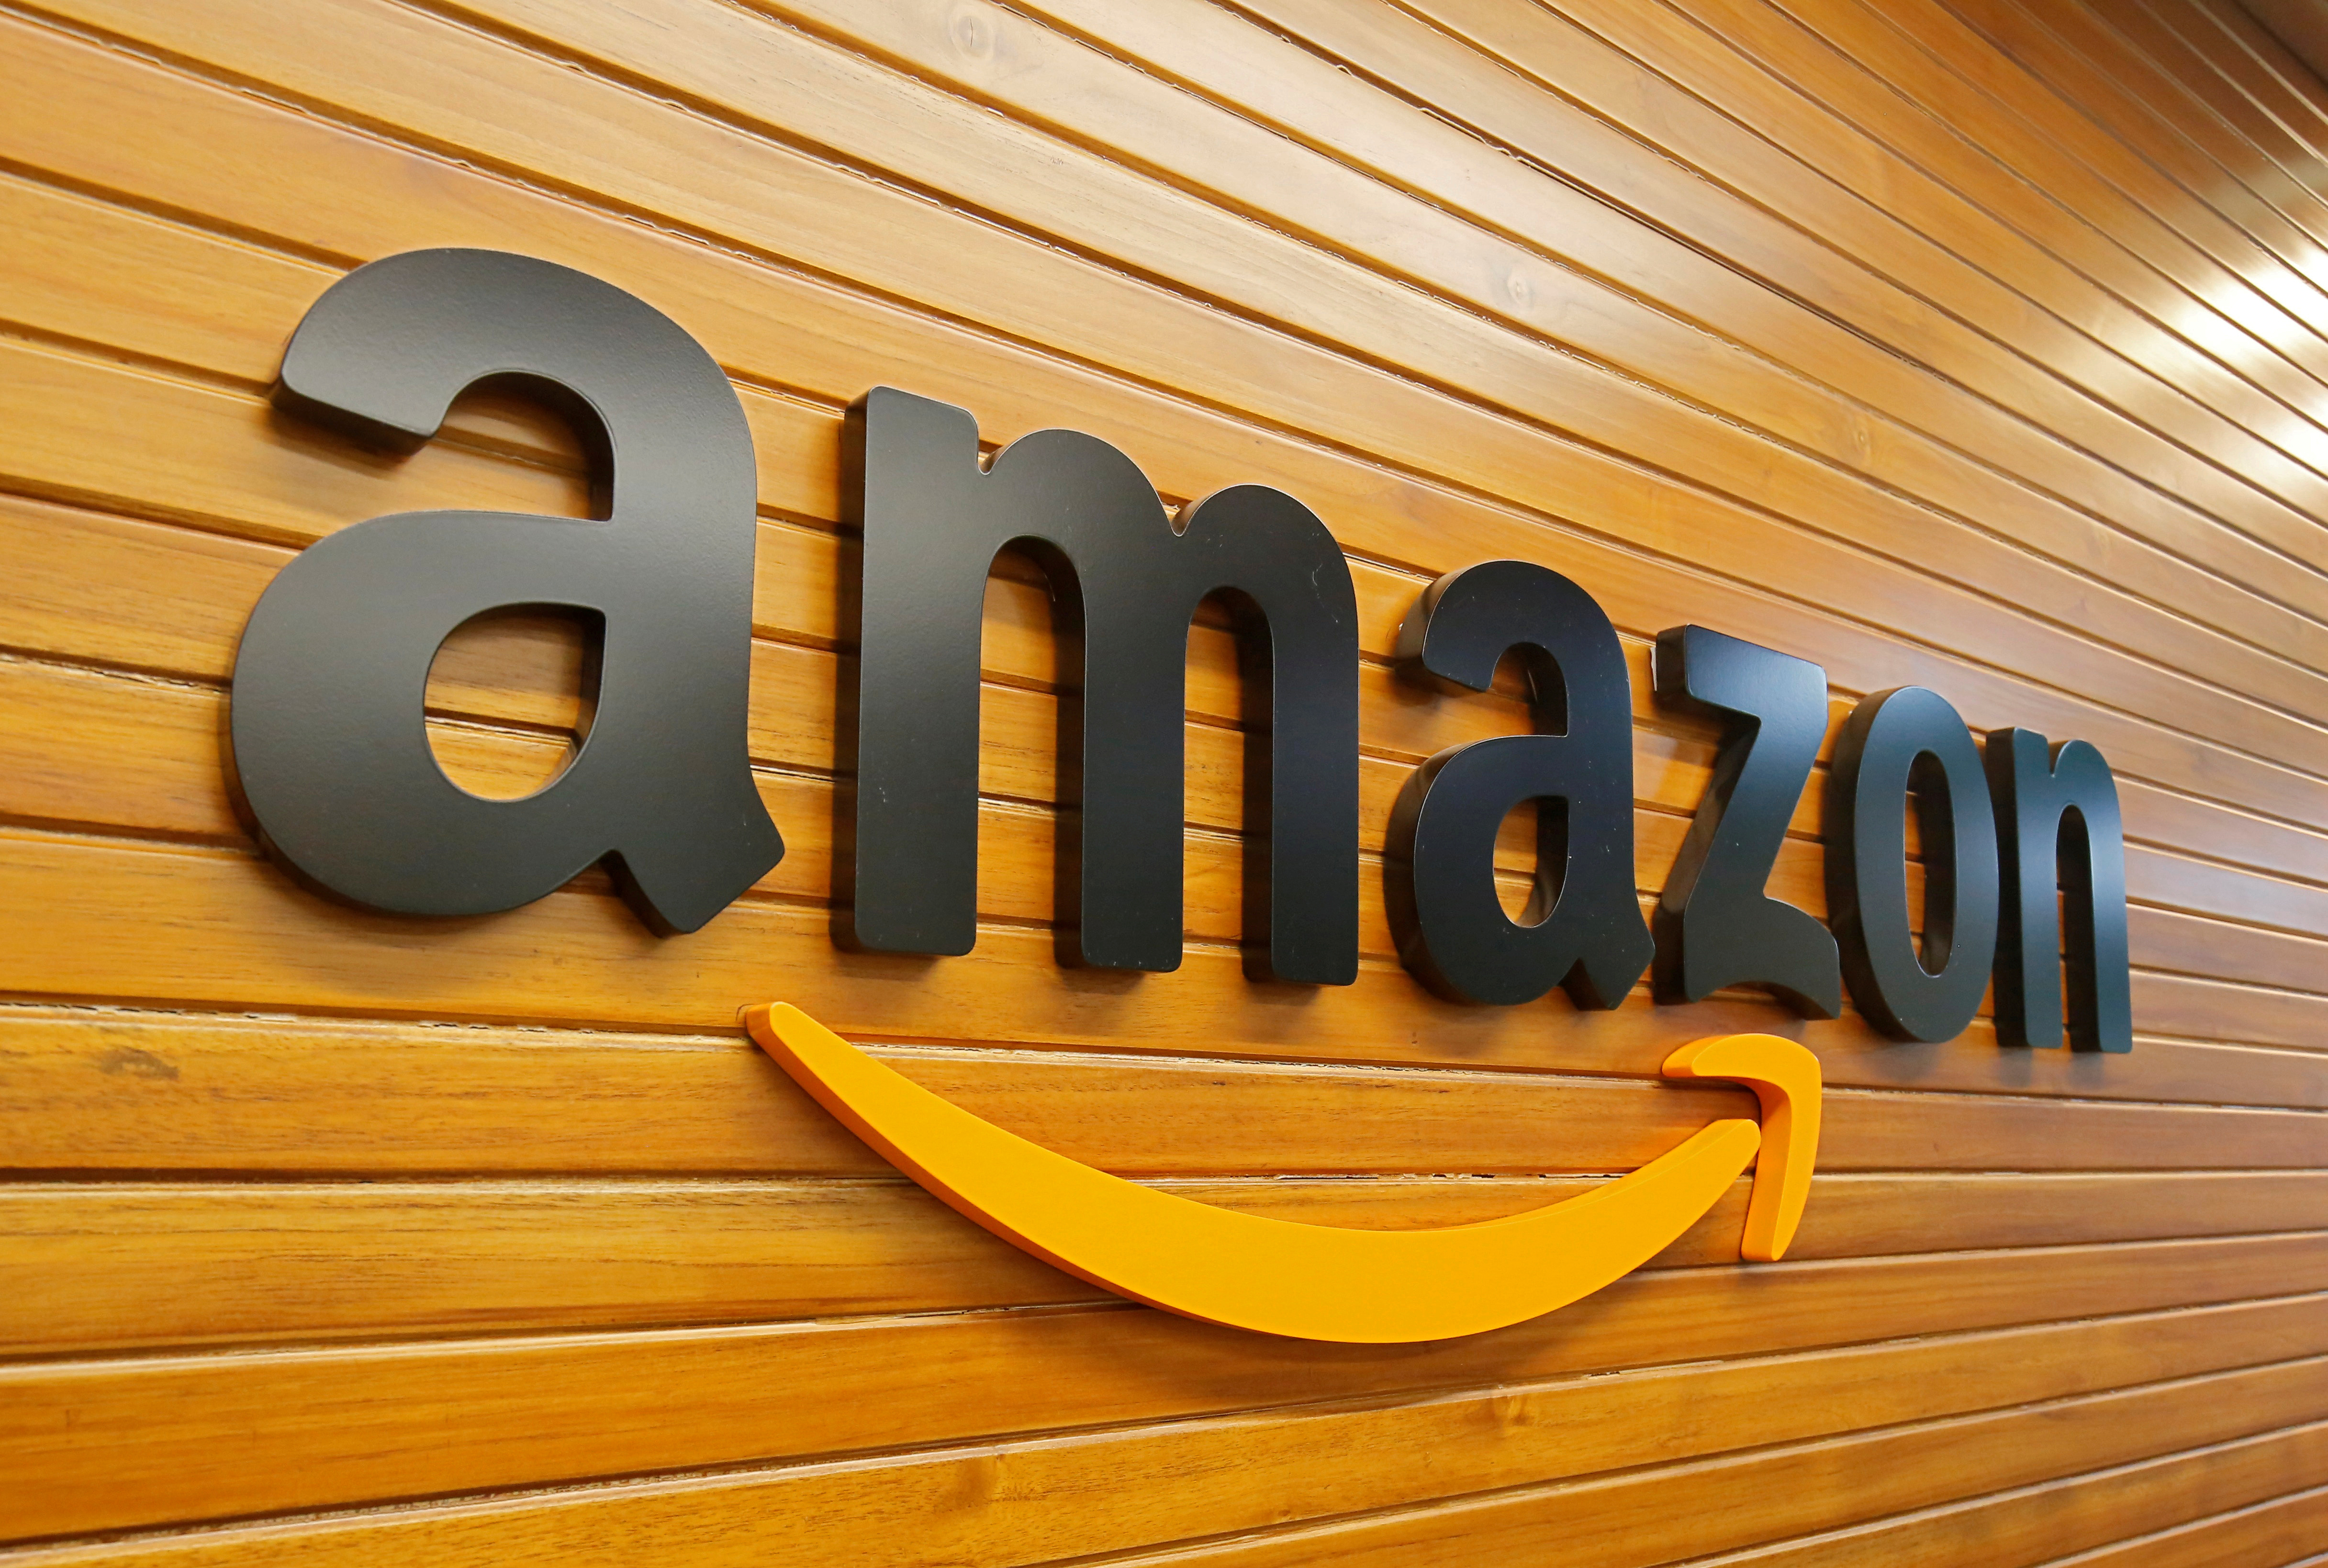 Amazon, beneficiada por el aumento de las compras online durante la pandemia